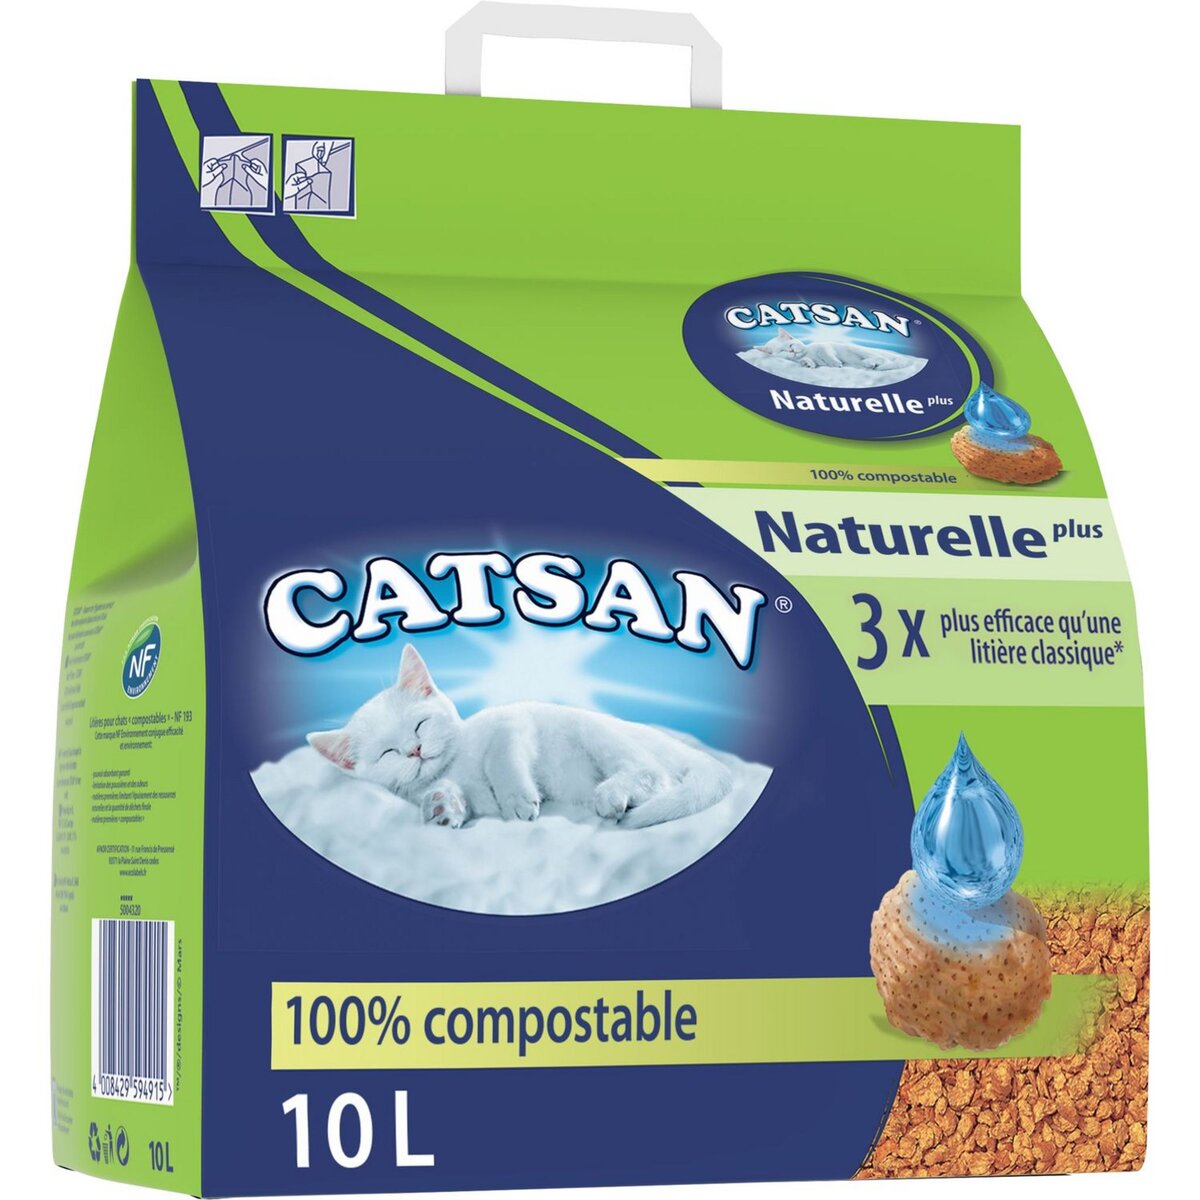 CATSAN Naturelle plus litière végétale 100% compostable pour chat 10l